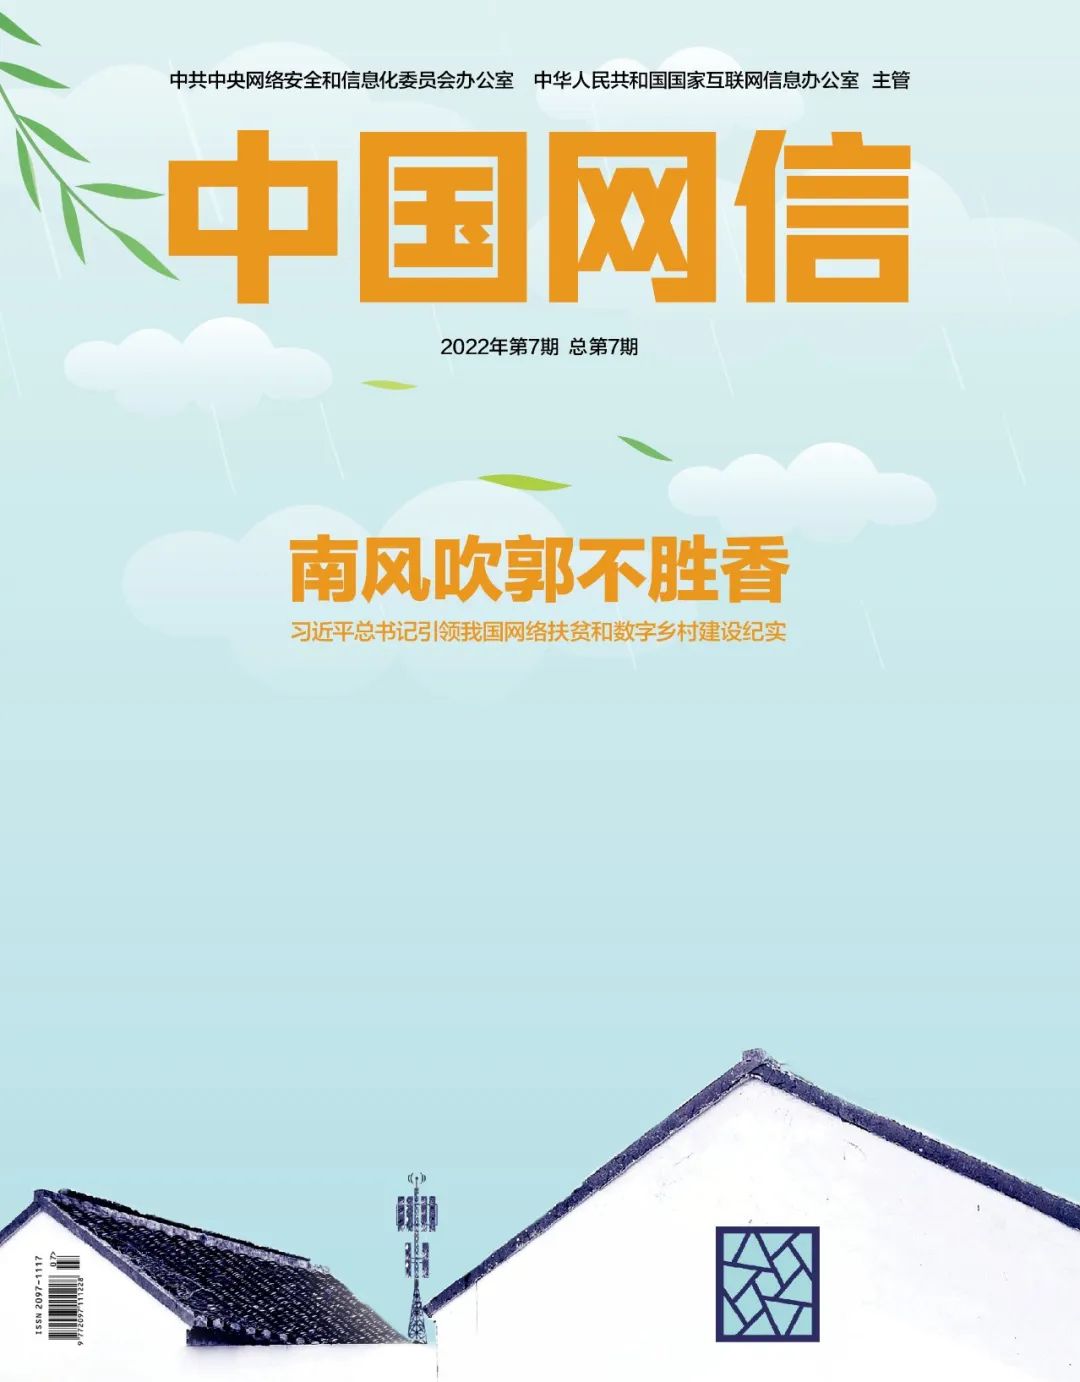 《中国网信》杂志发表《习近平总书记引领我国网络扶贫和数字乡村建设纪实》1.jpg